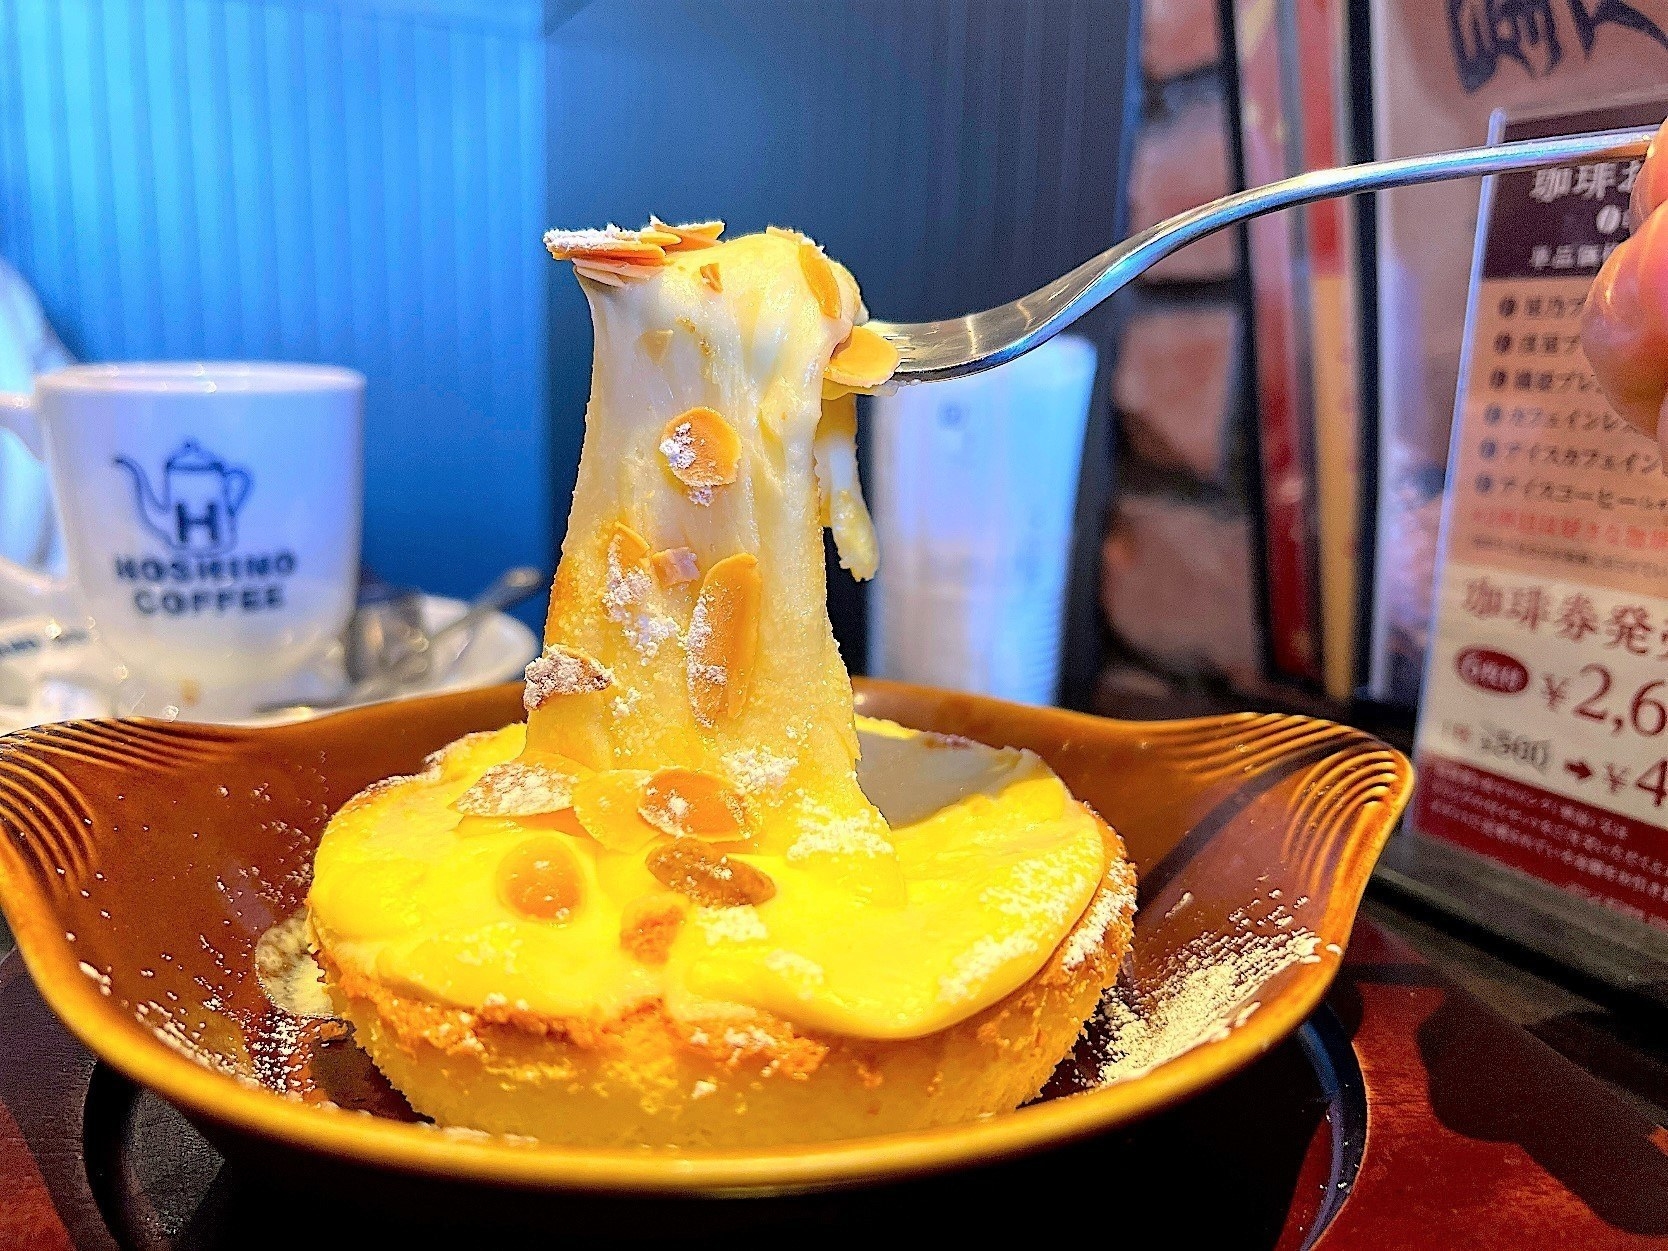 星野珈琲店のオススメのスイーツ「ふわとろ焼きチーズケーキ」